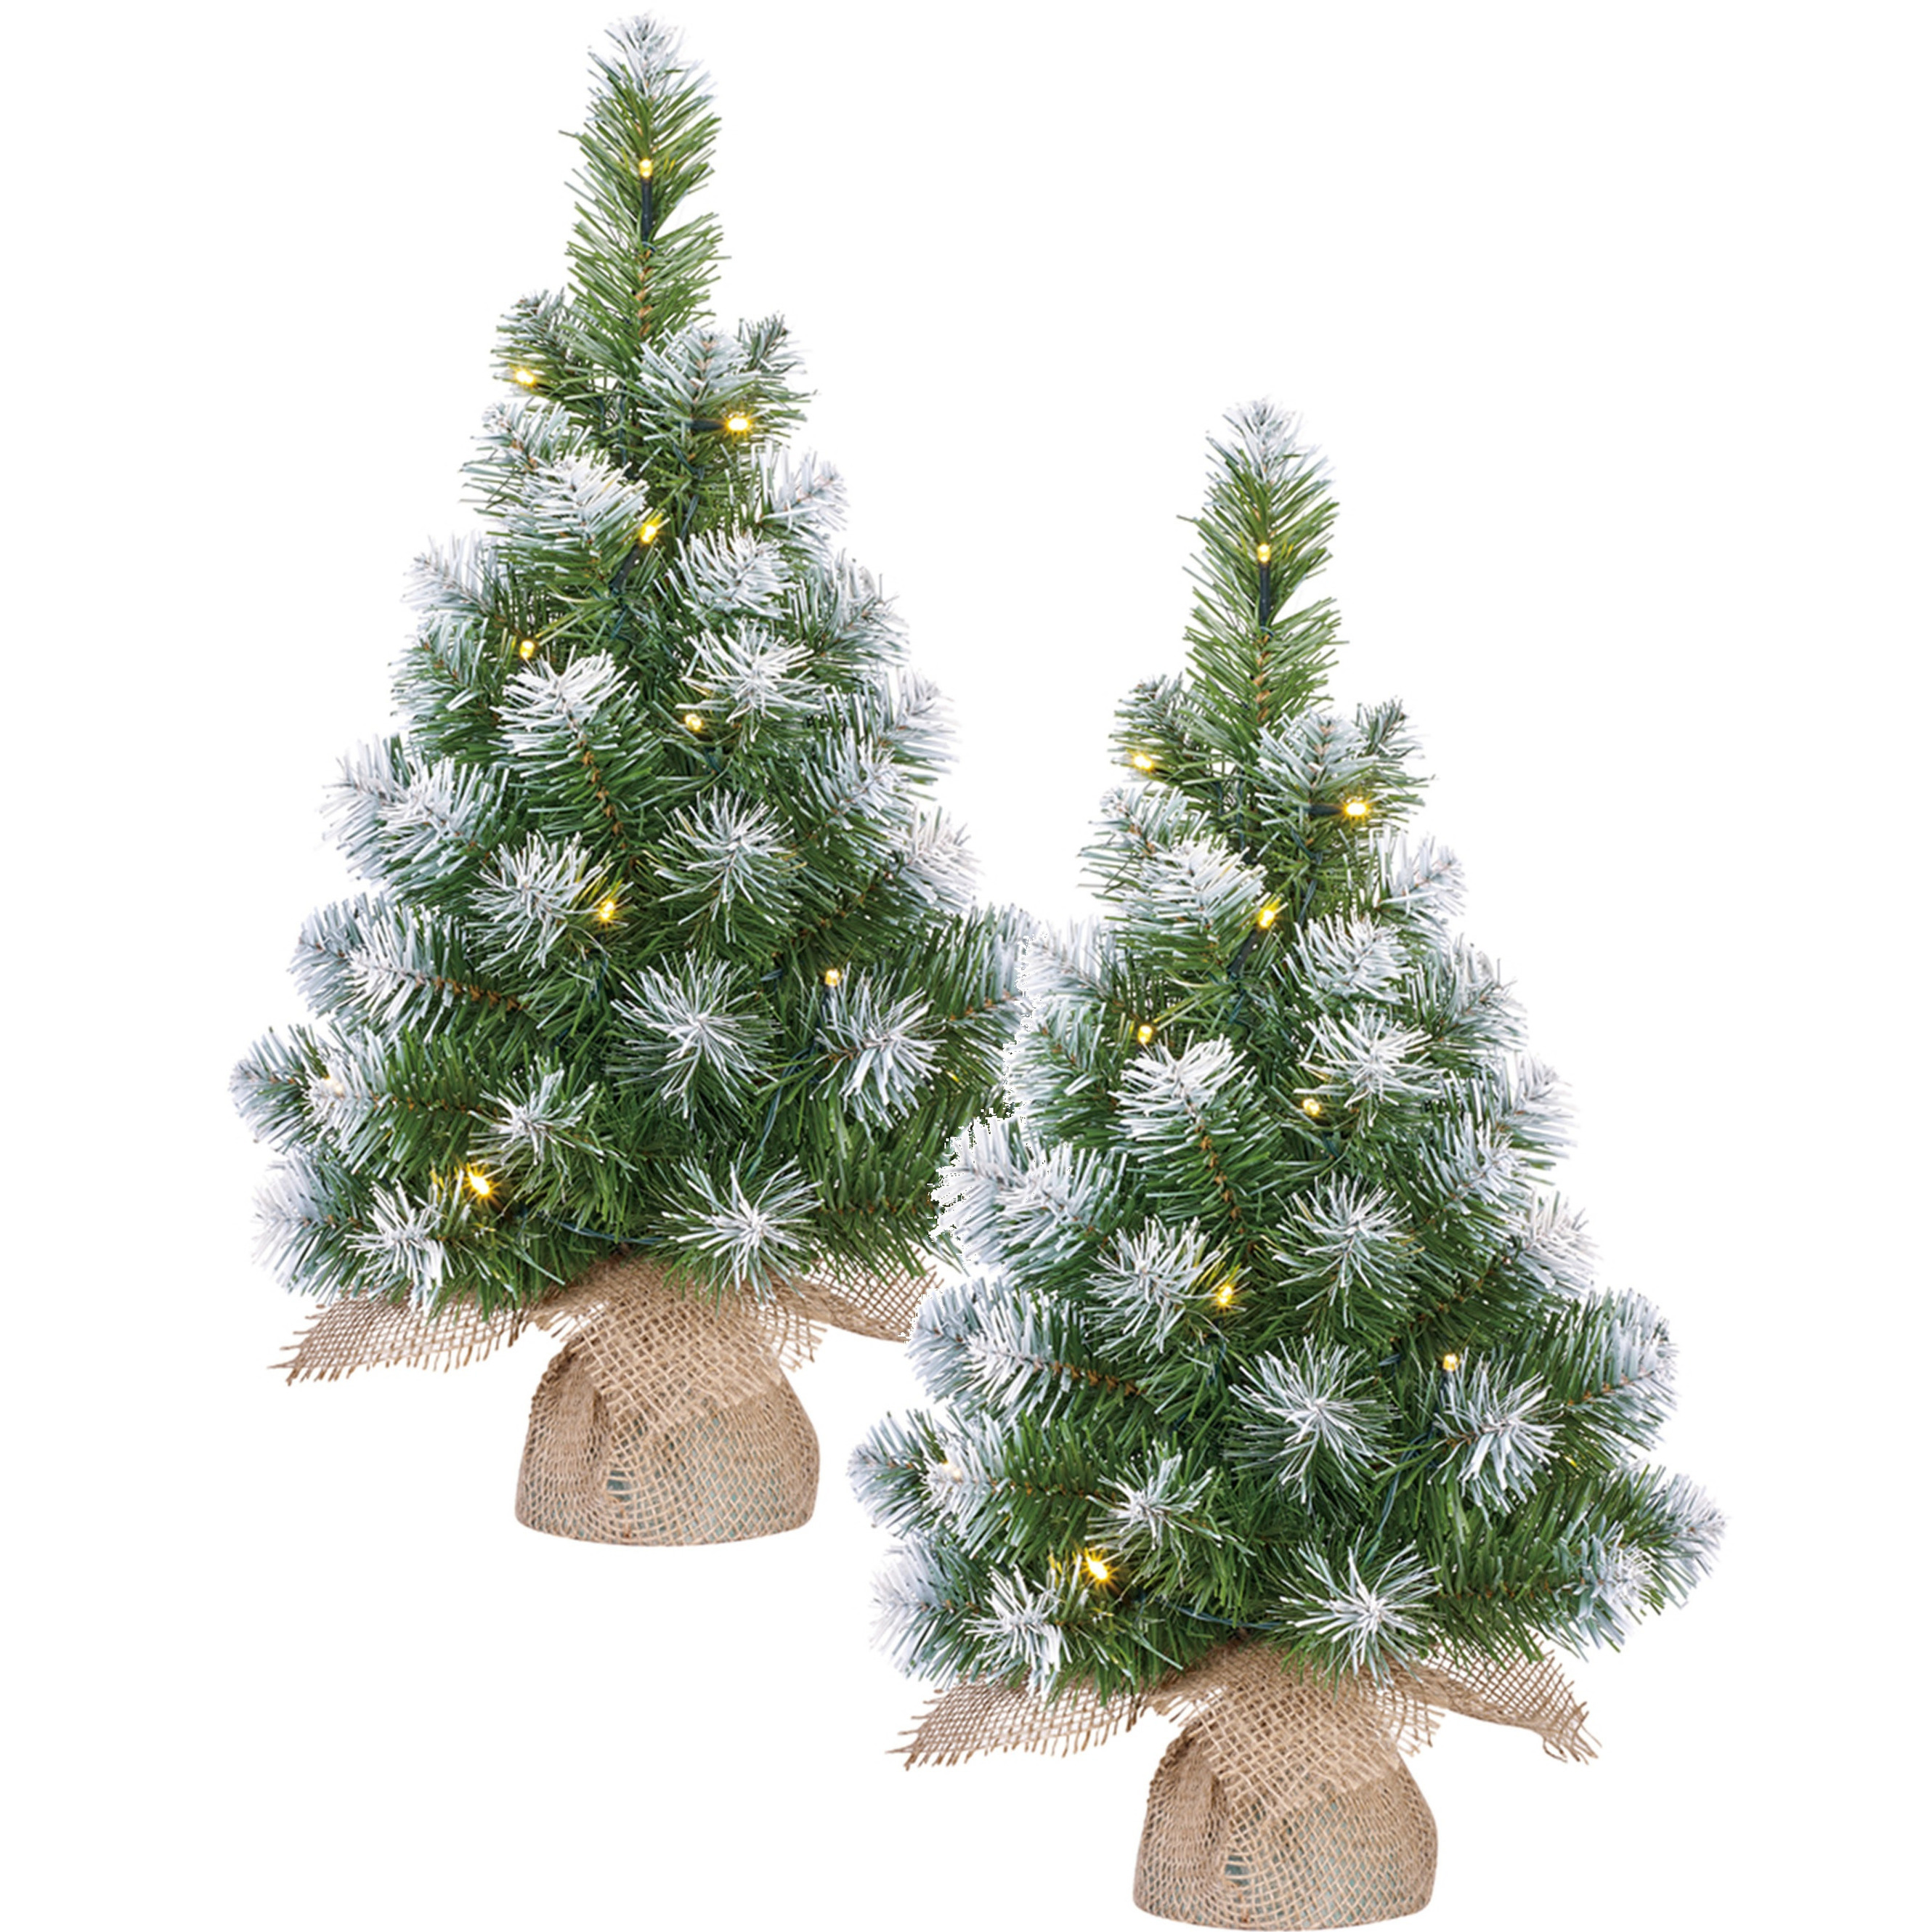 2x stuks kunst kerstboom-kunstboom in jute zak met verlichting en sneeuw 60 cm